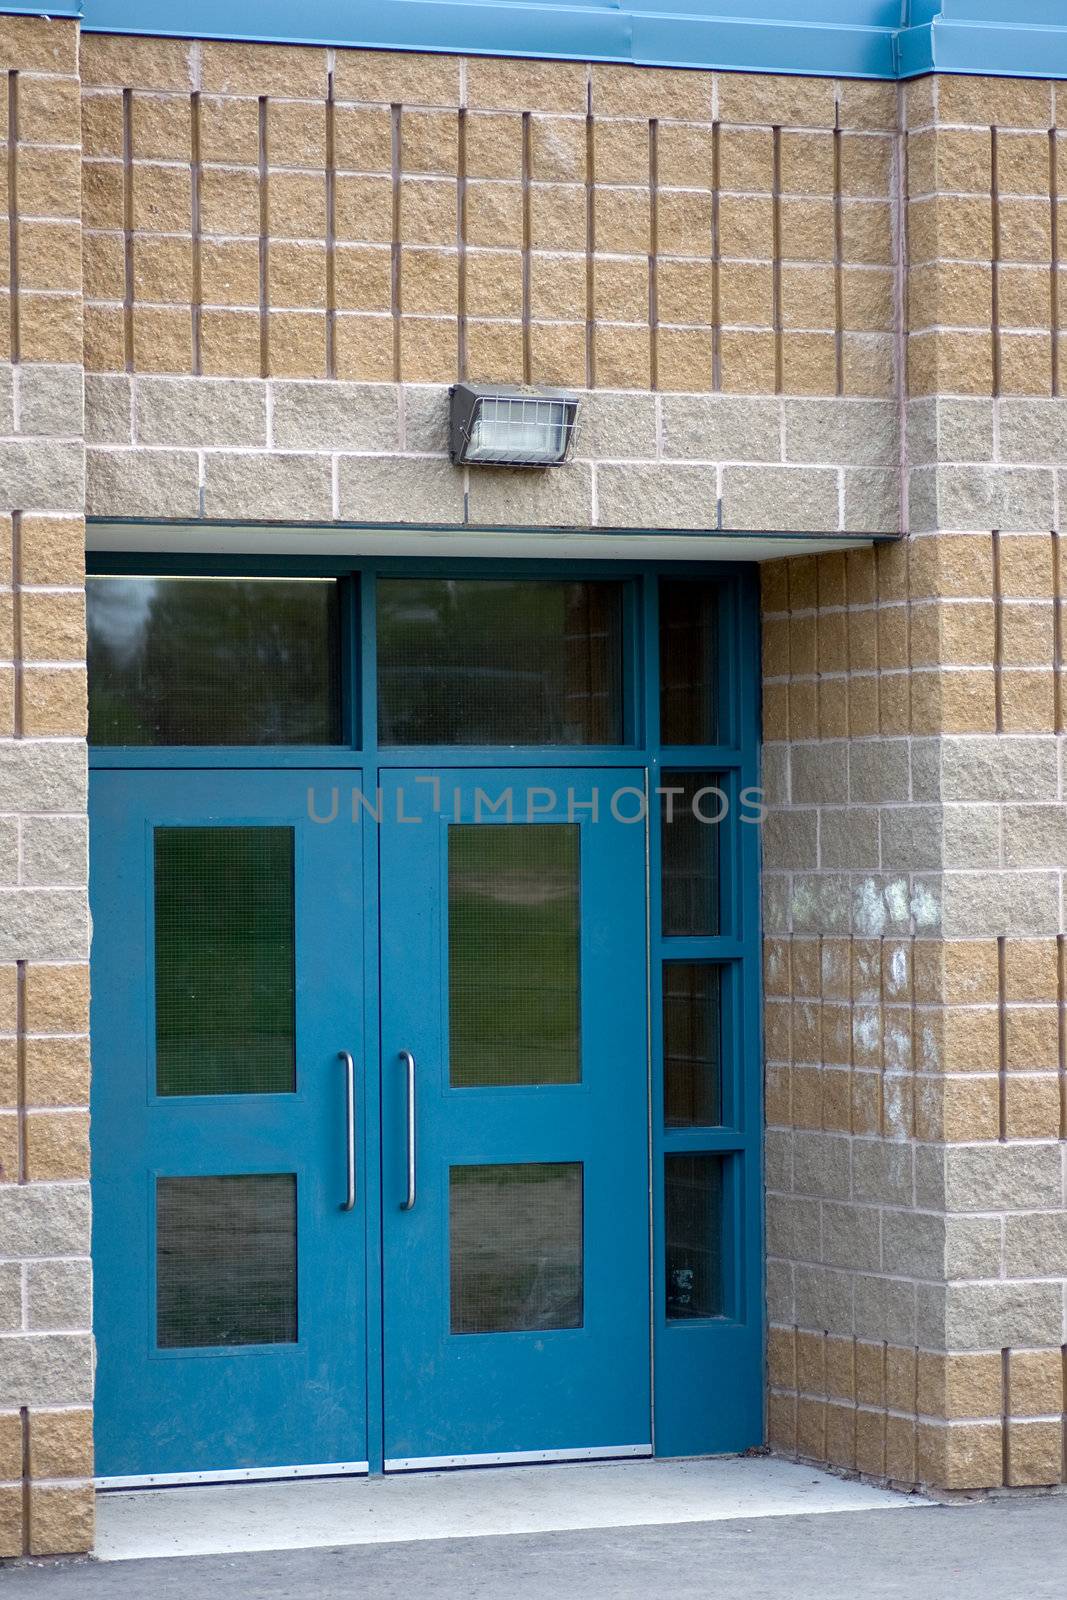 School doors by woodygraphs